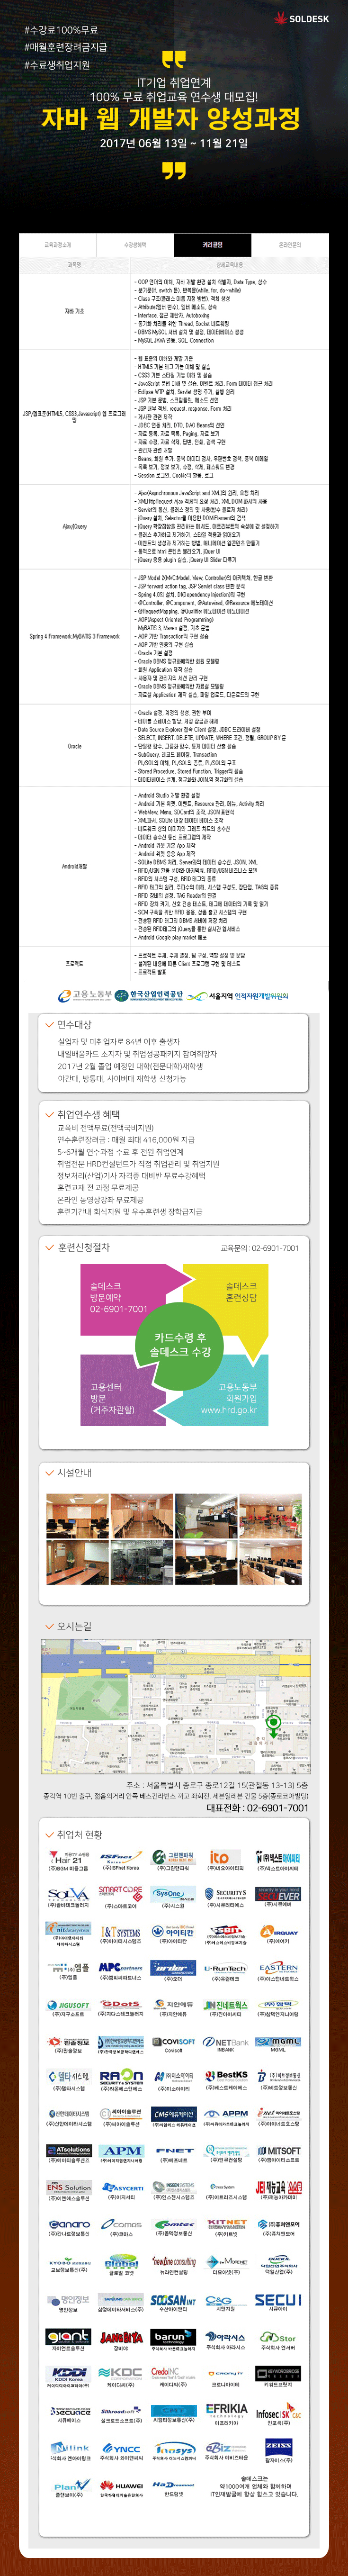 자바웹개발자양성과정_6월13.gif